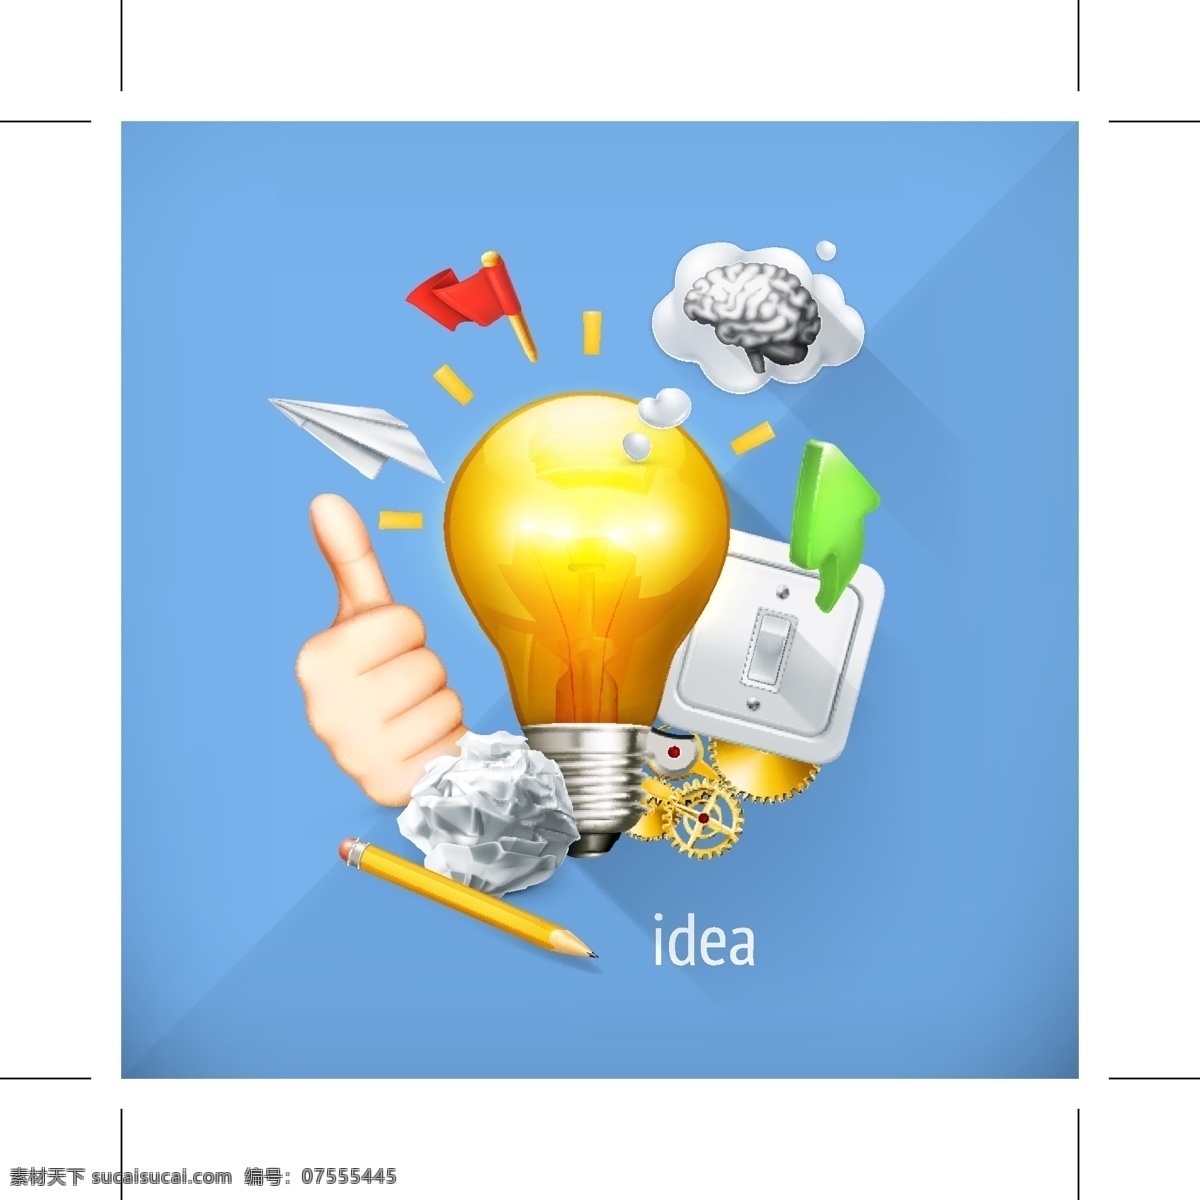 创意 创新 idea 灵感 商务 商务设计 灯泡 金融 财经 商业设计 商务创新 商业创新 好点子 好主意 好创意 good 好想法 新想法 商务创意 商业创意 创意想法 创新想法 创意概念 创新概念 其他图标 标志图标